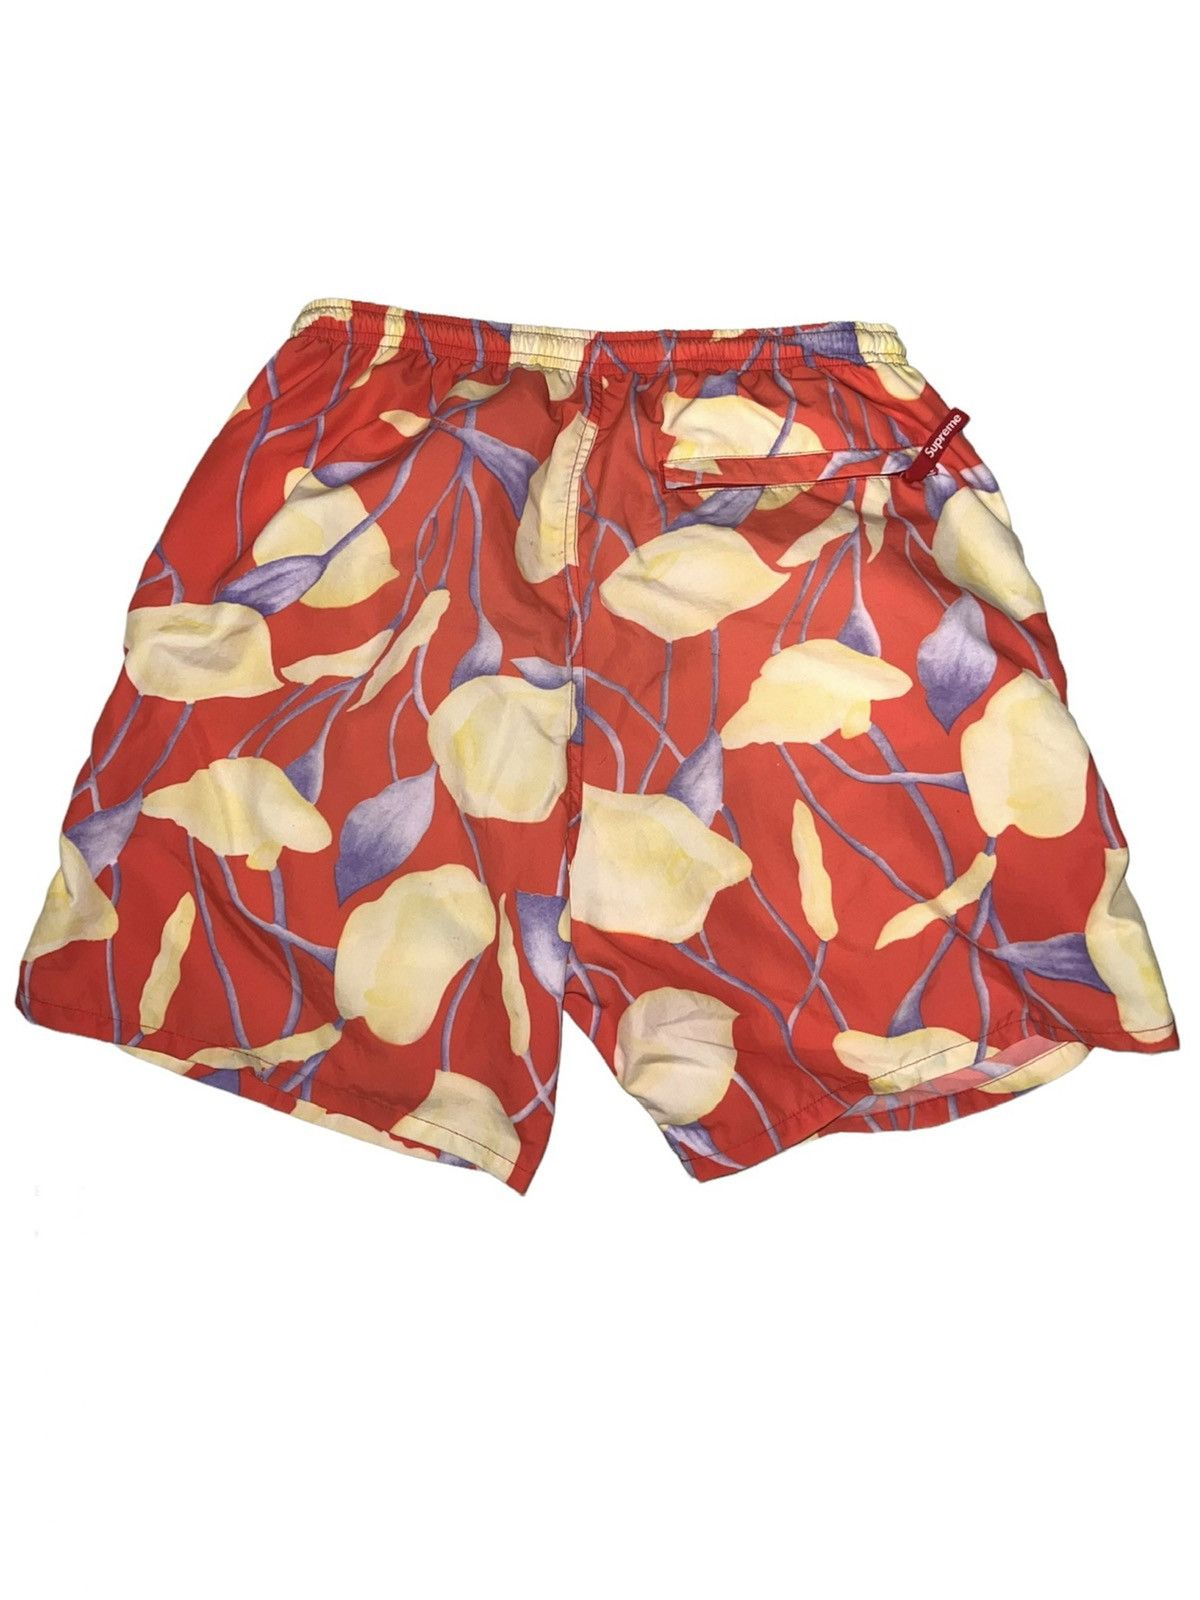 Supreme Supreme Lily Swim Trunk Shorts | Grailed